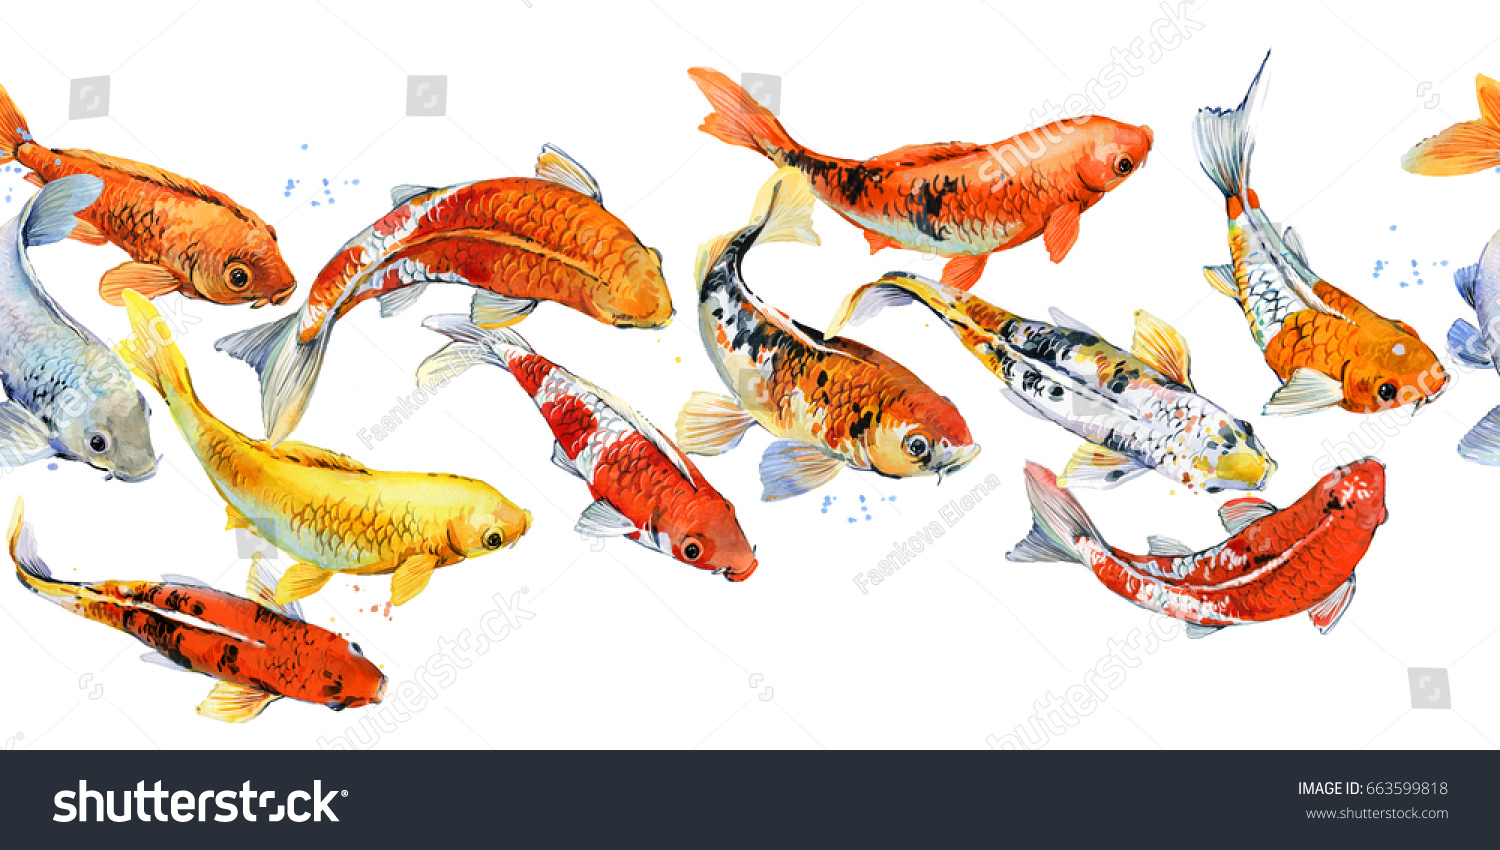 鯉の継ぎ目模様 水彩魚のイラスト のイラスト素材